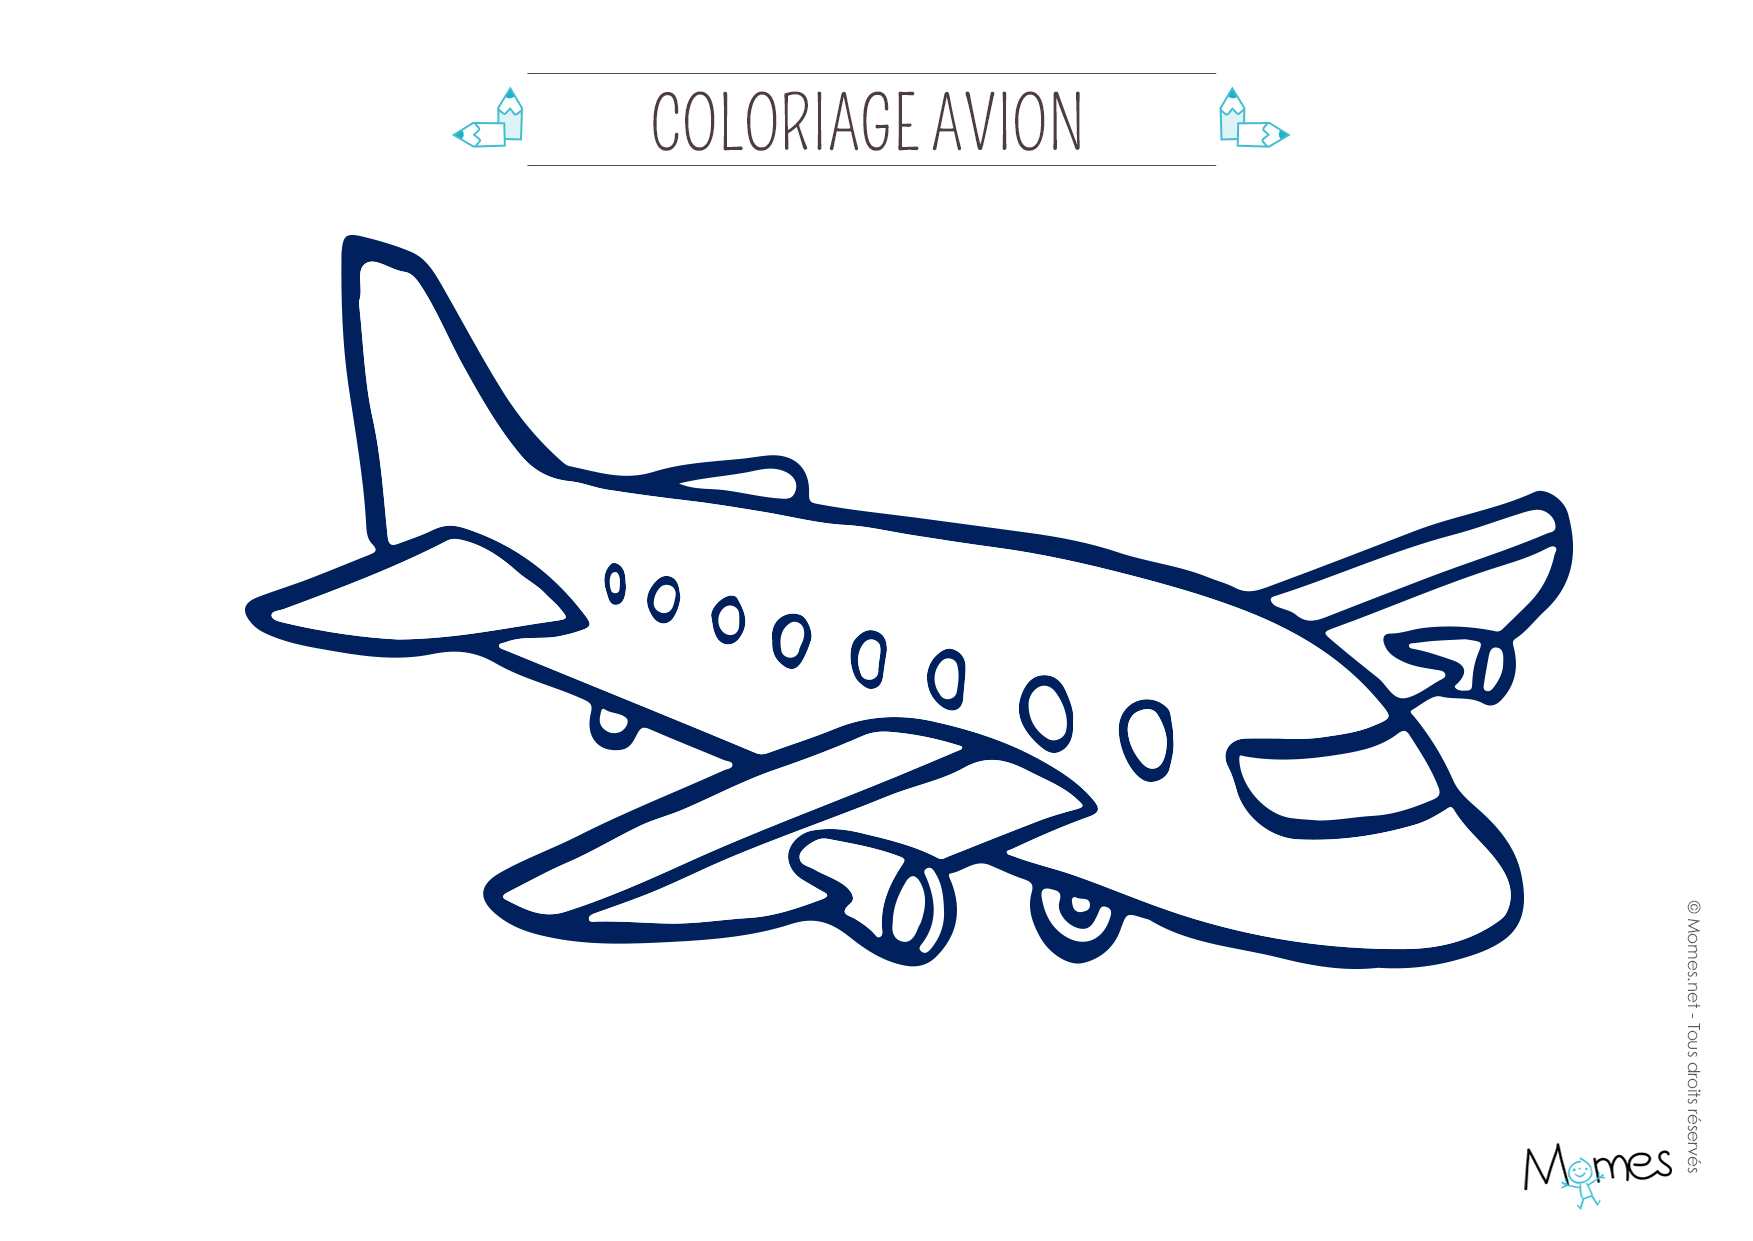 Coloriage Avion  Momes.net